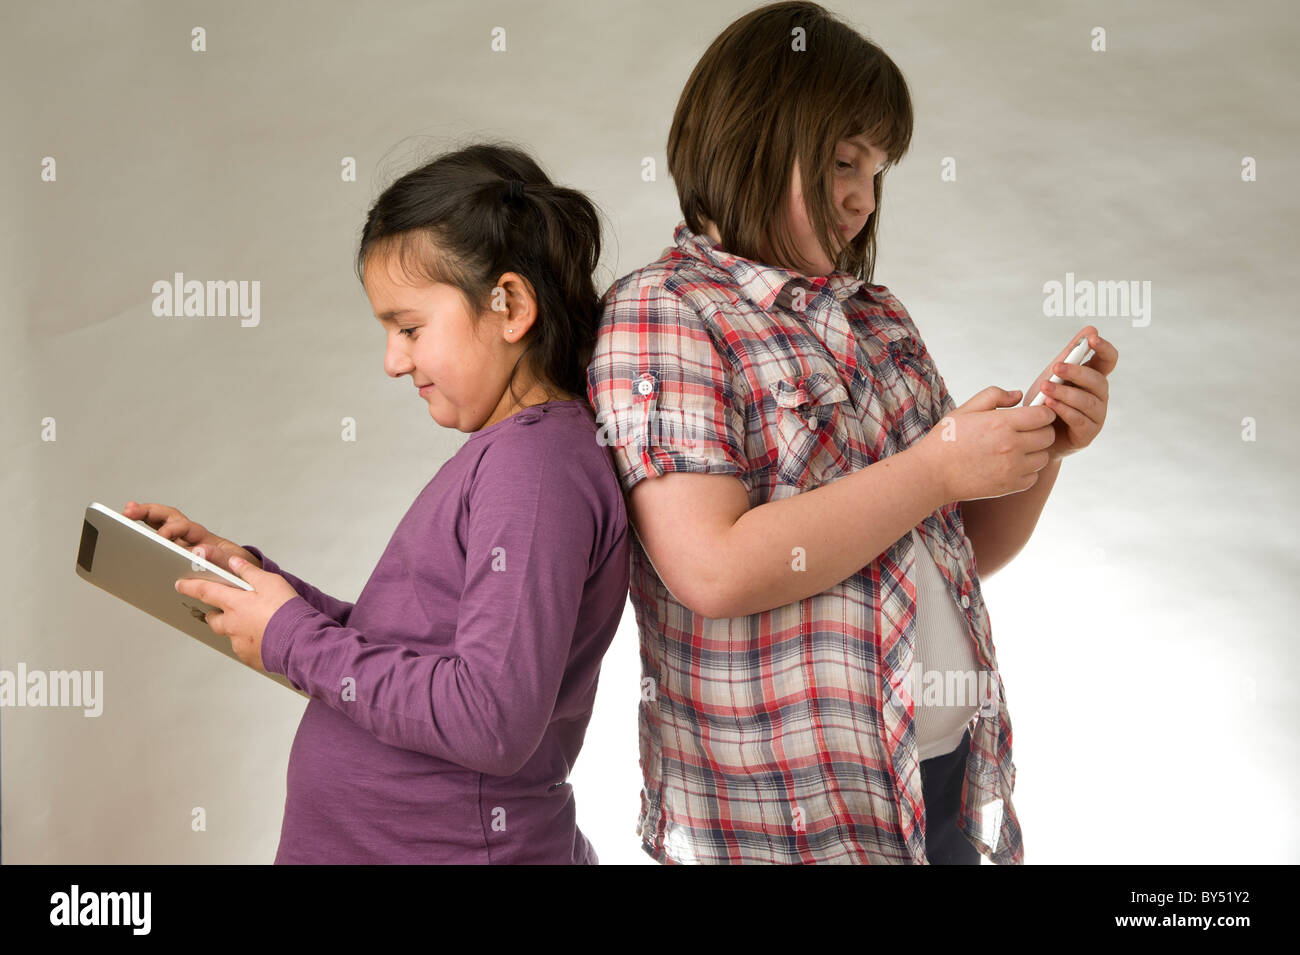 Zwei junge Mädchen spielen elektronischer Spiele auf einem Touchscreen pad Stockfoto